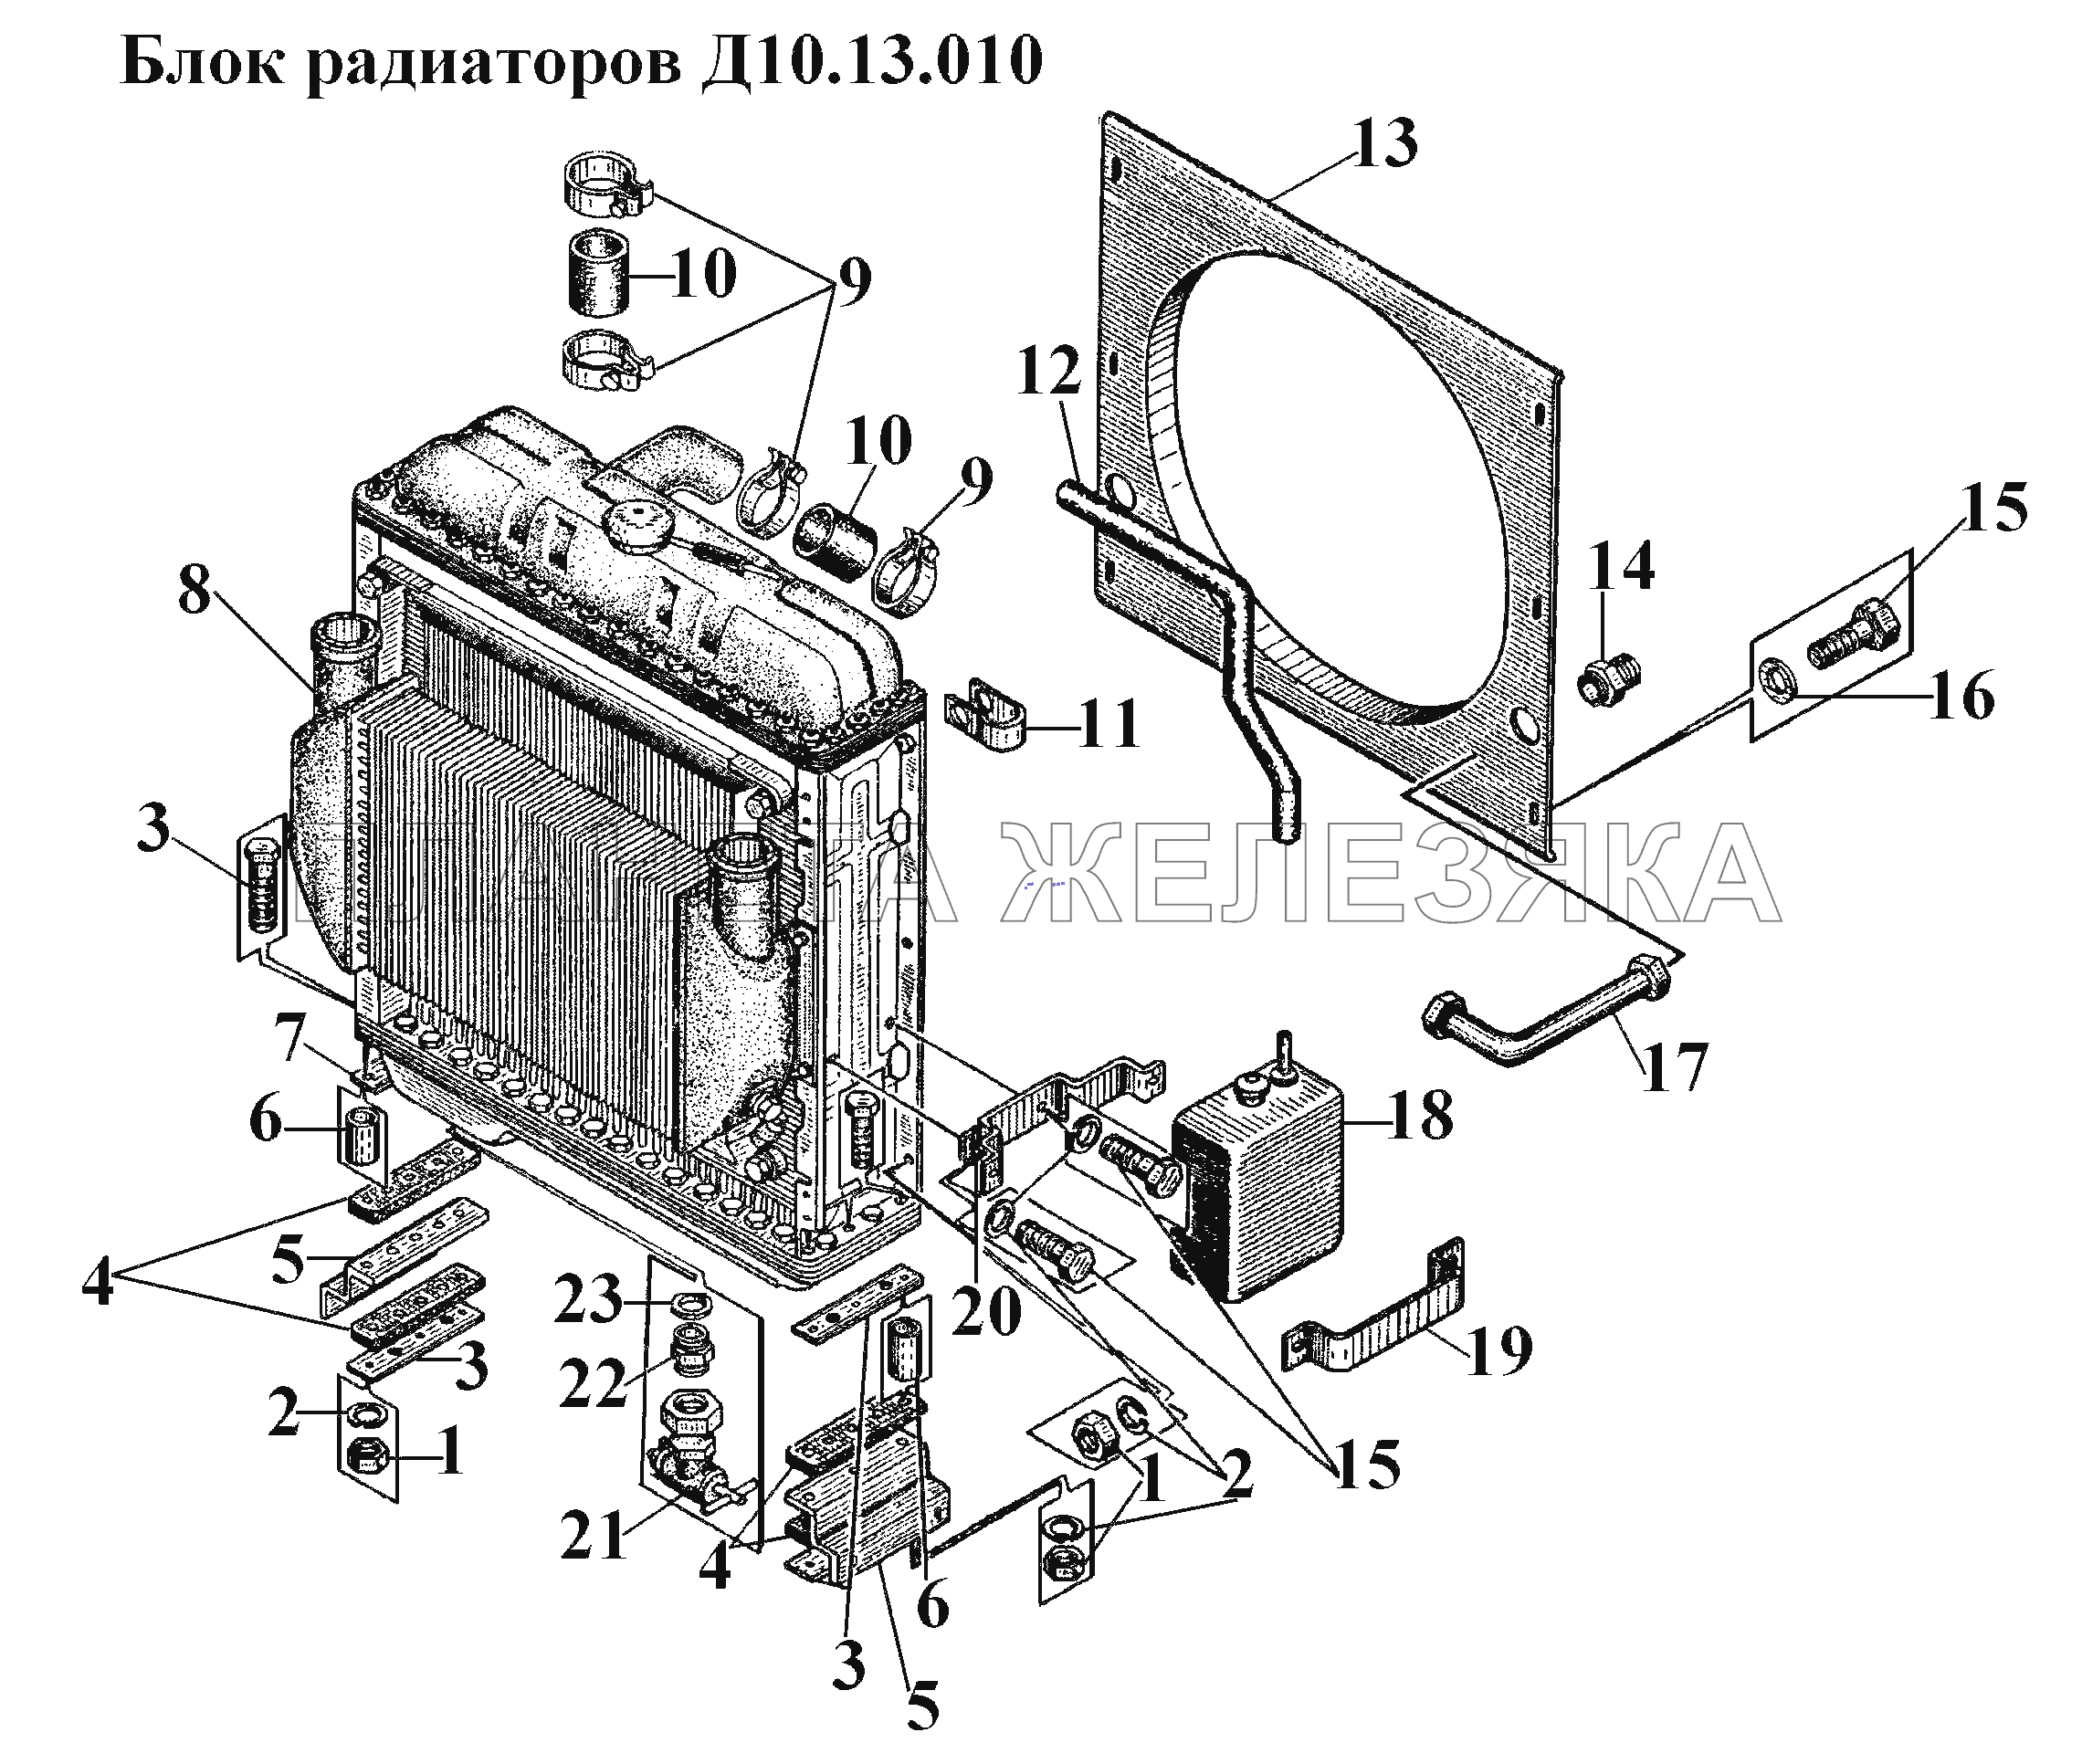 Блок радиаторов Д10.13.010 ВТ-100Д